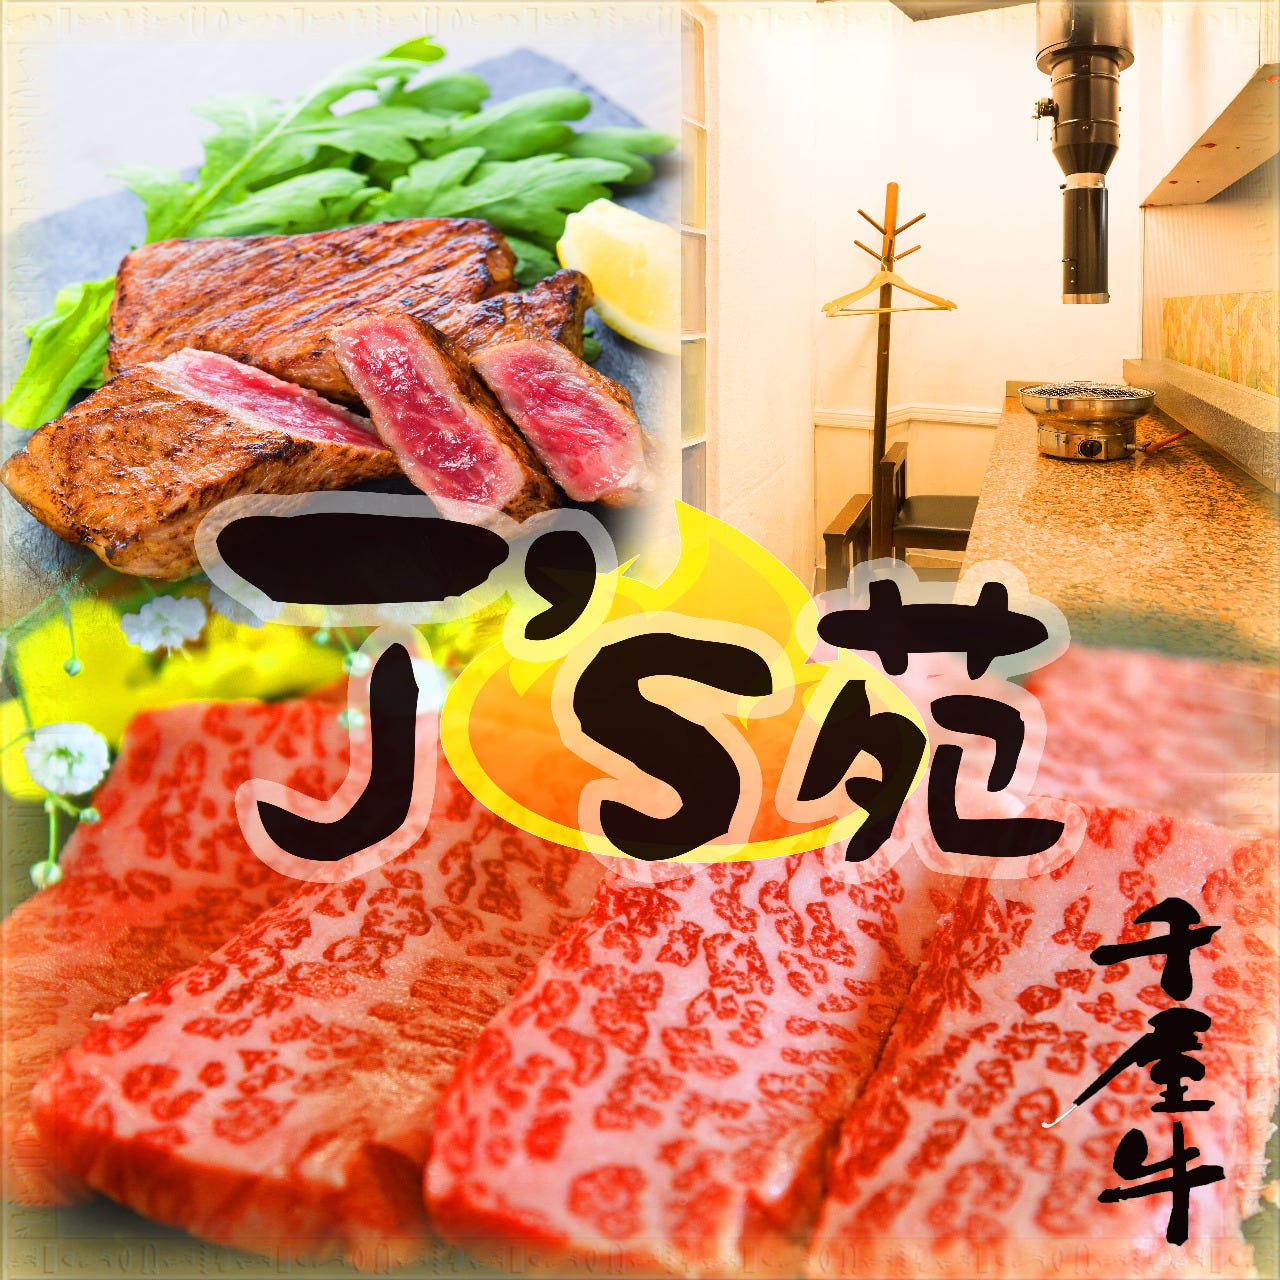 千屋牛 焼肉割烹 J’s苑 -ジェイズエン-のURL1